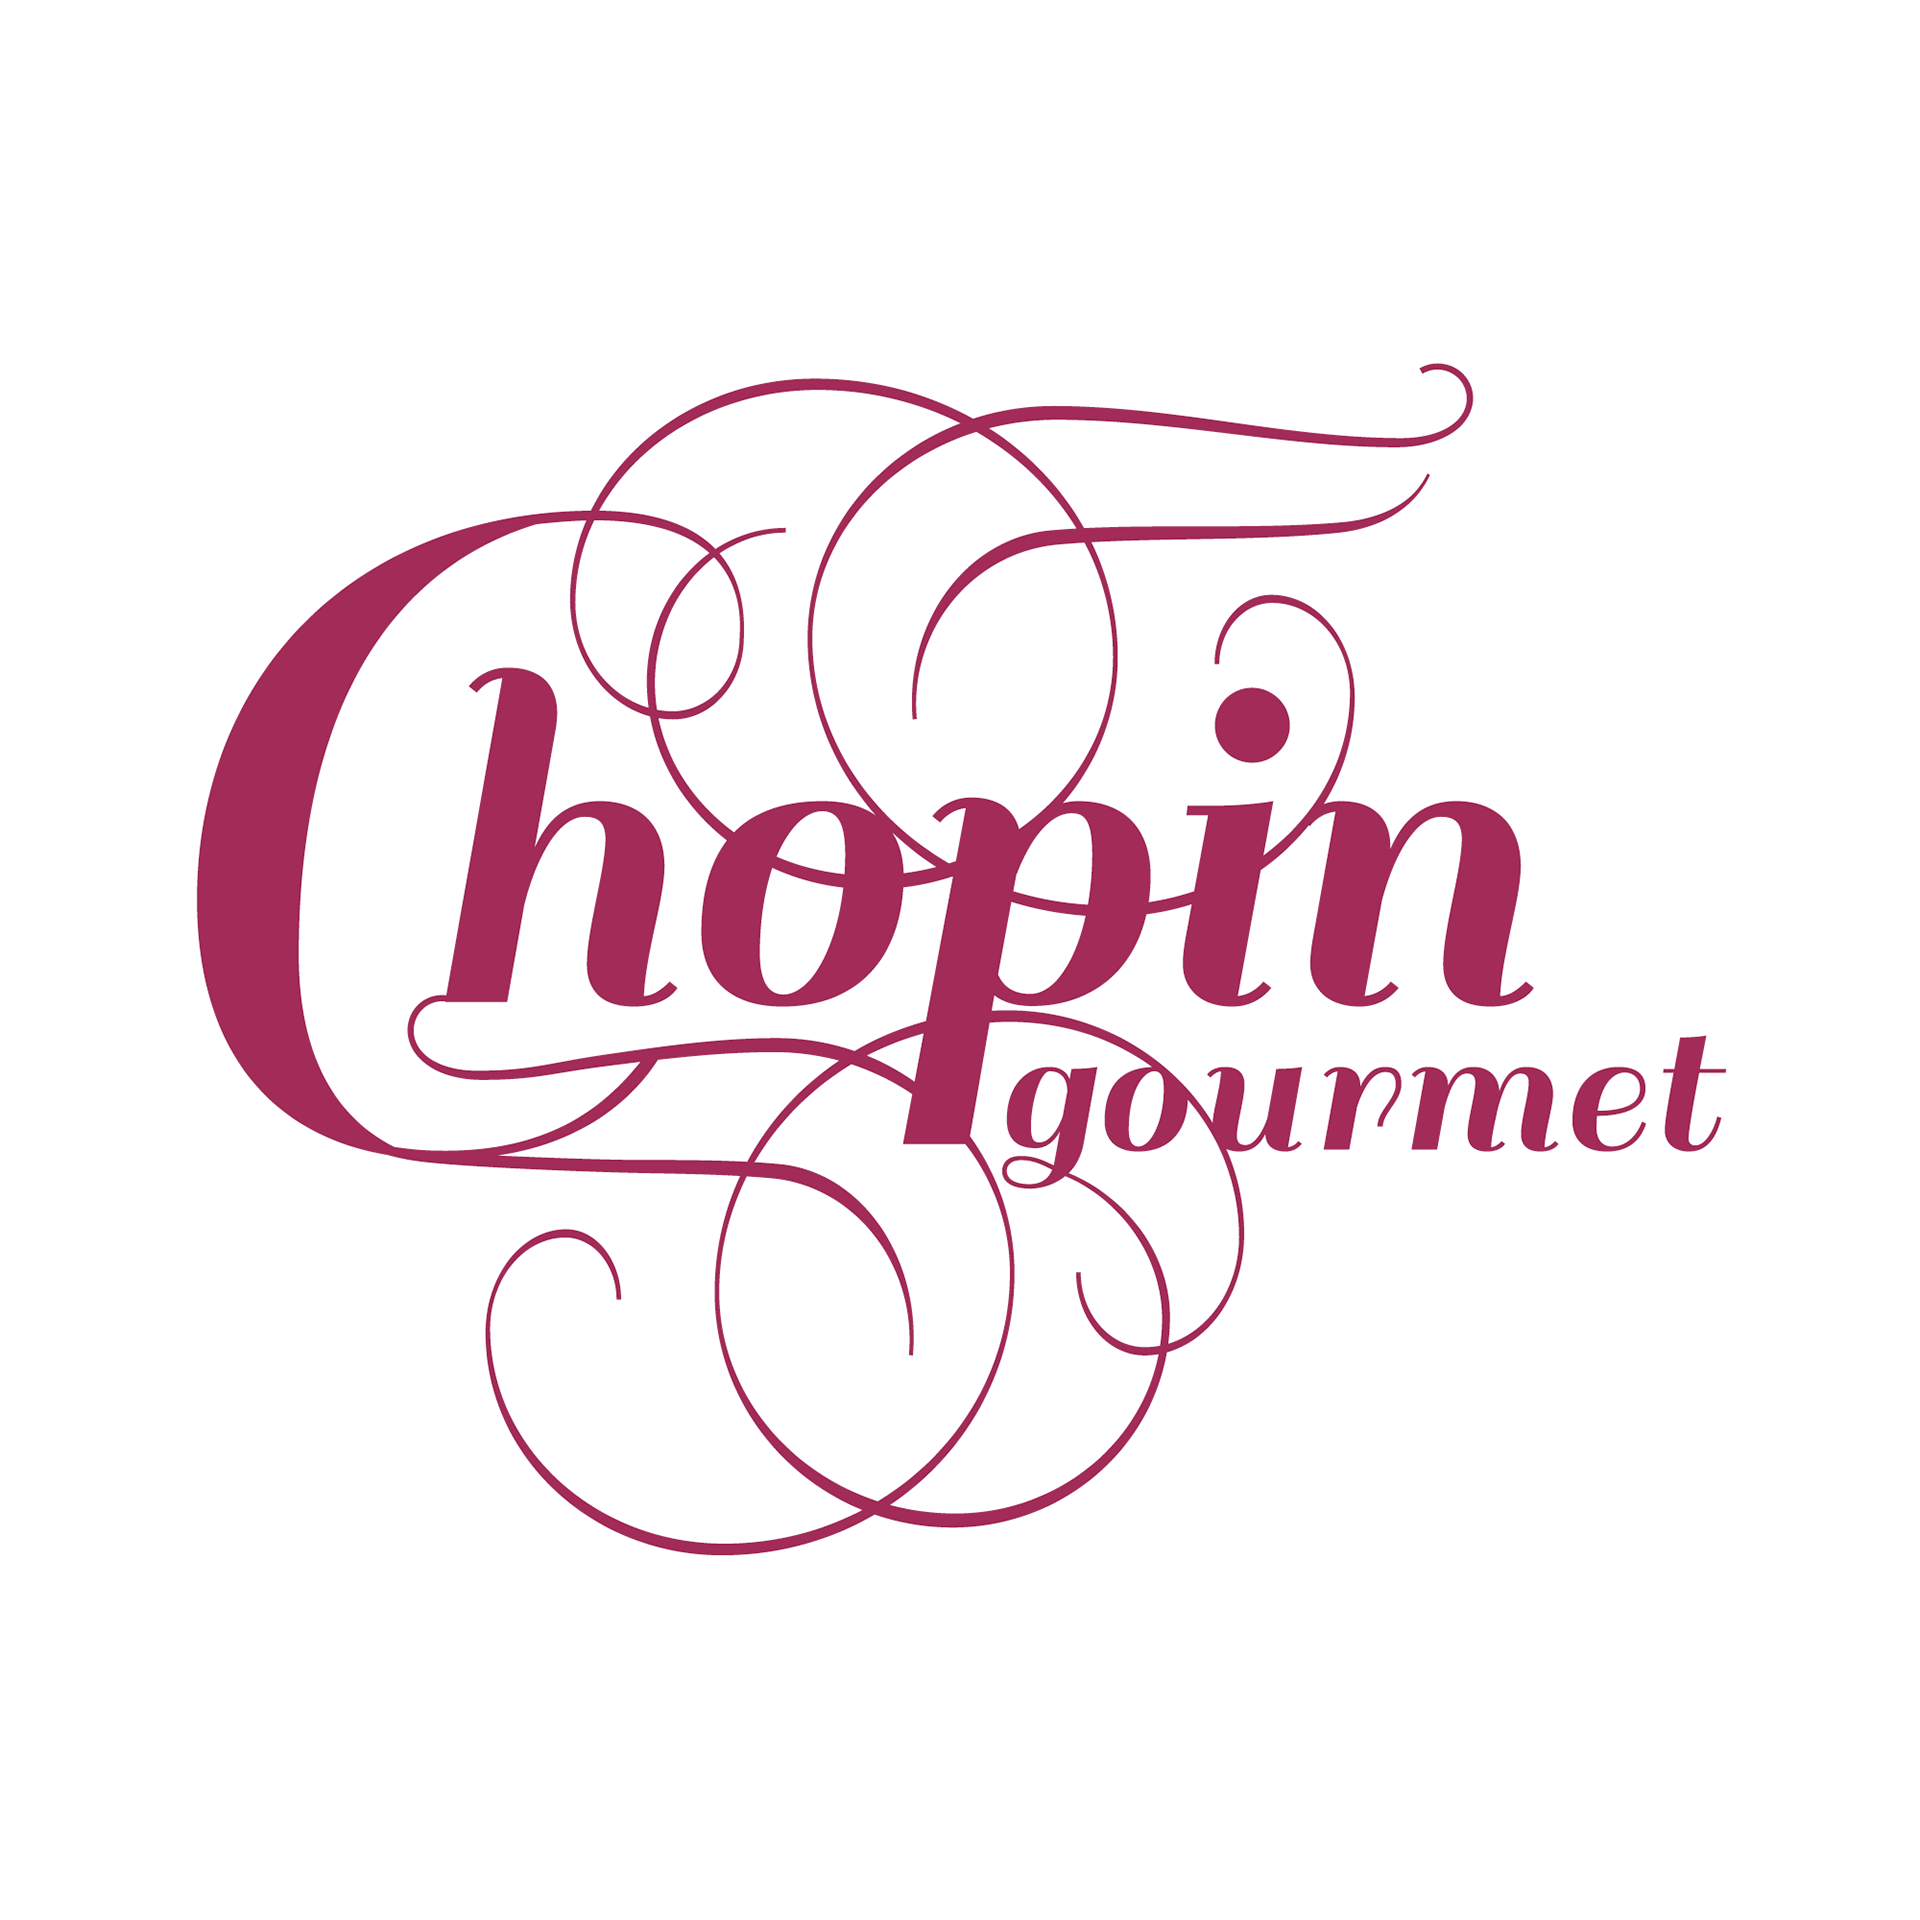 logo Chopin gourmet - ksiazka